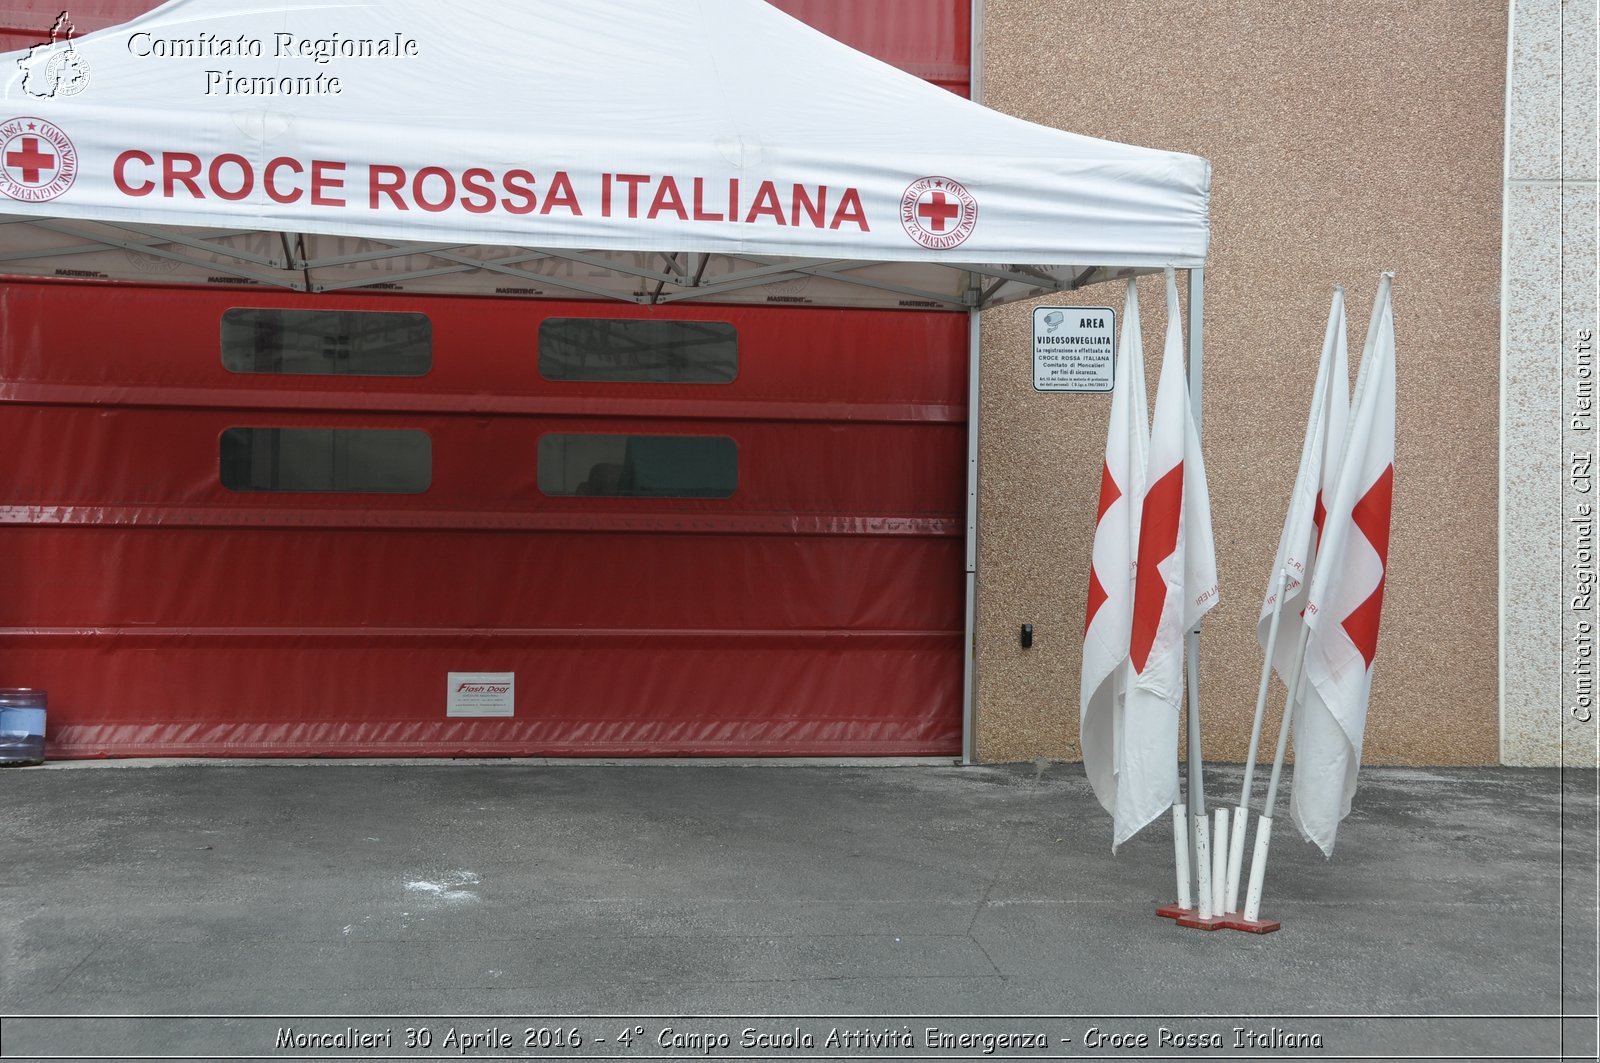 Moncalieri 30 Aprile 2016 - 4 Campo Scuola Attivit Emergenza - Croce Rossa Italiana- Comitato Regionale del Piemonte